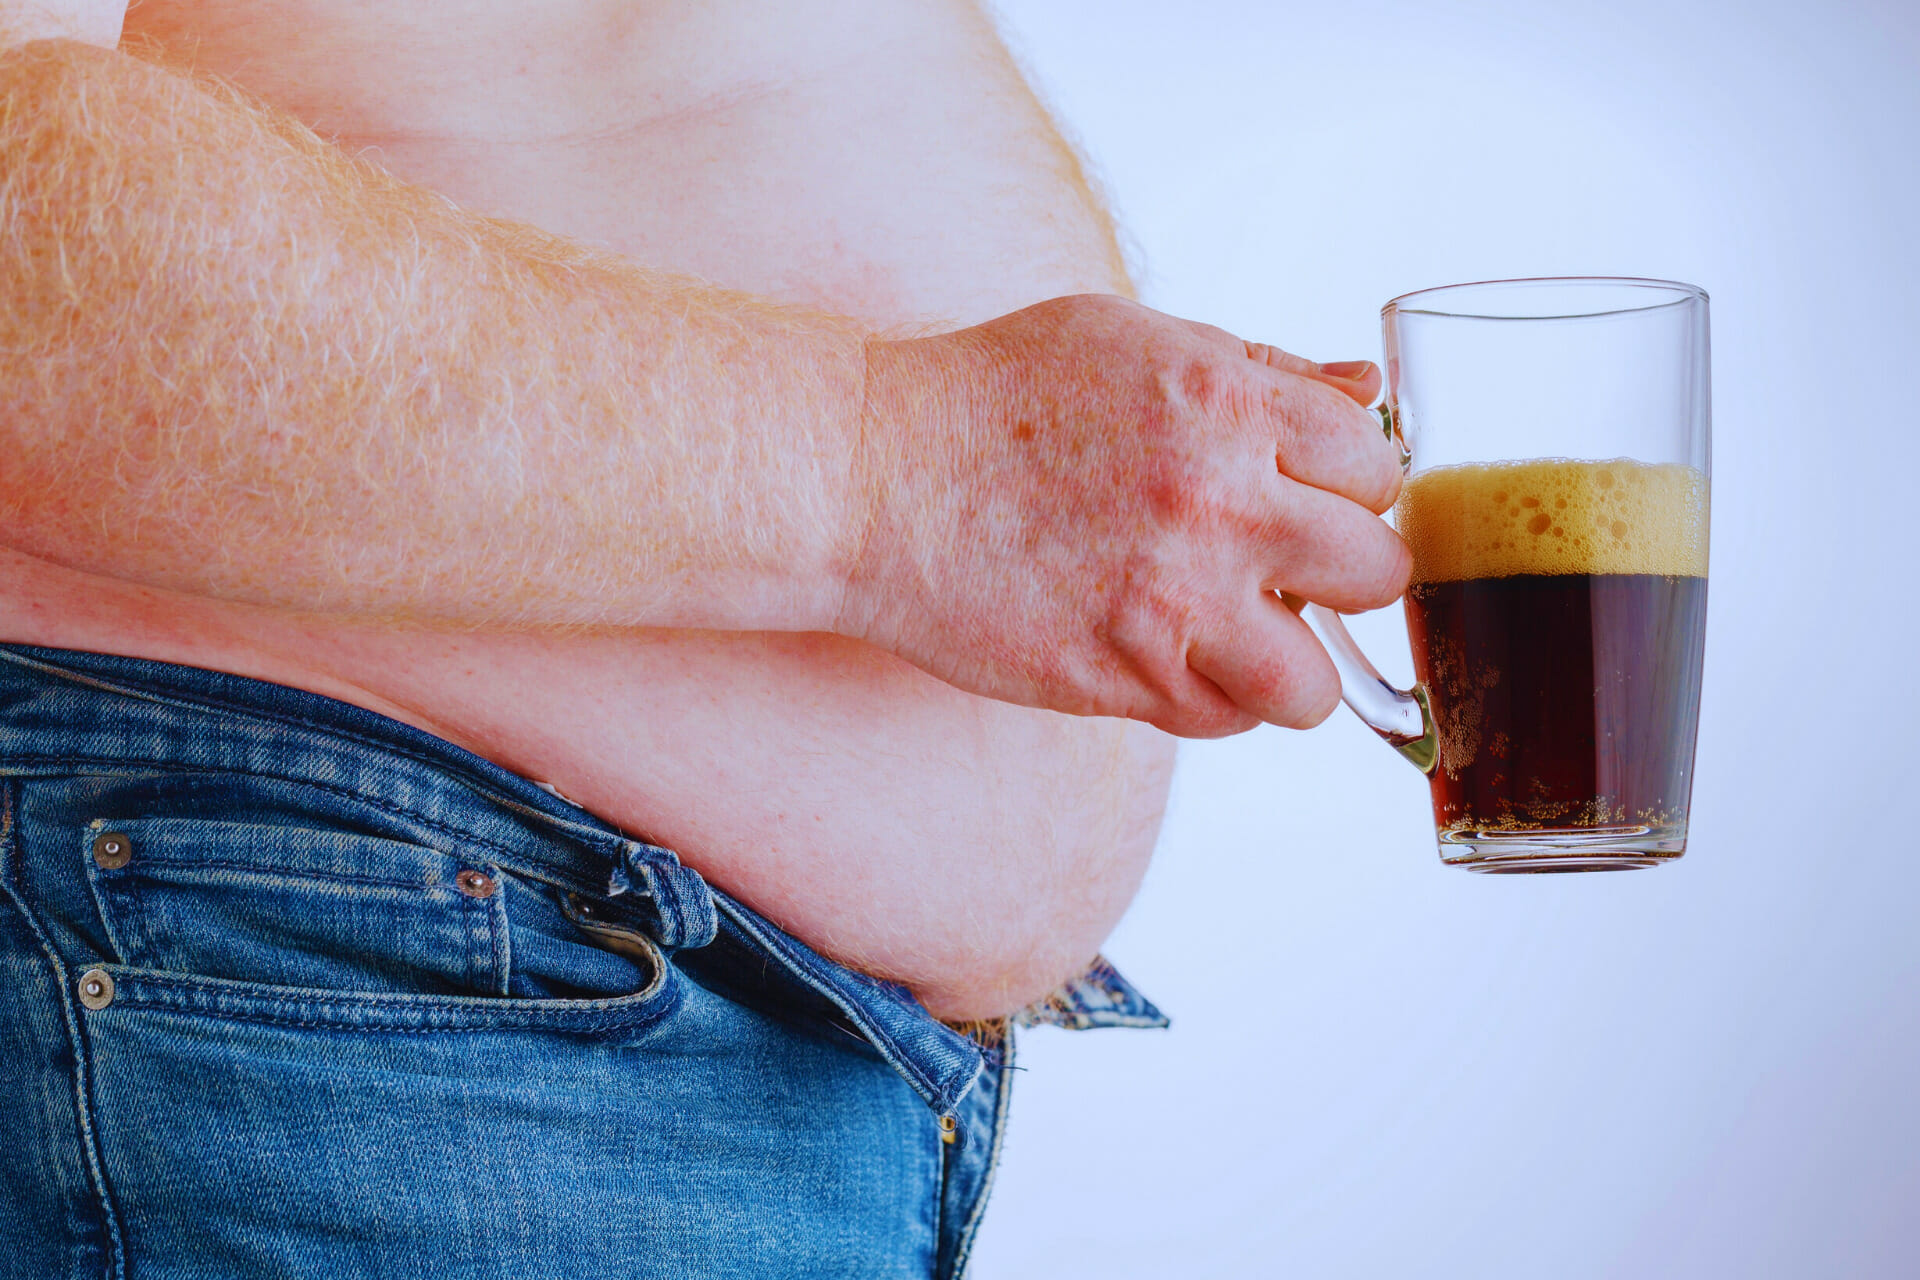 obesity soda